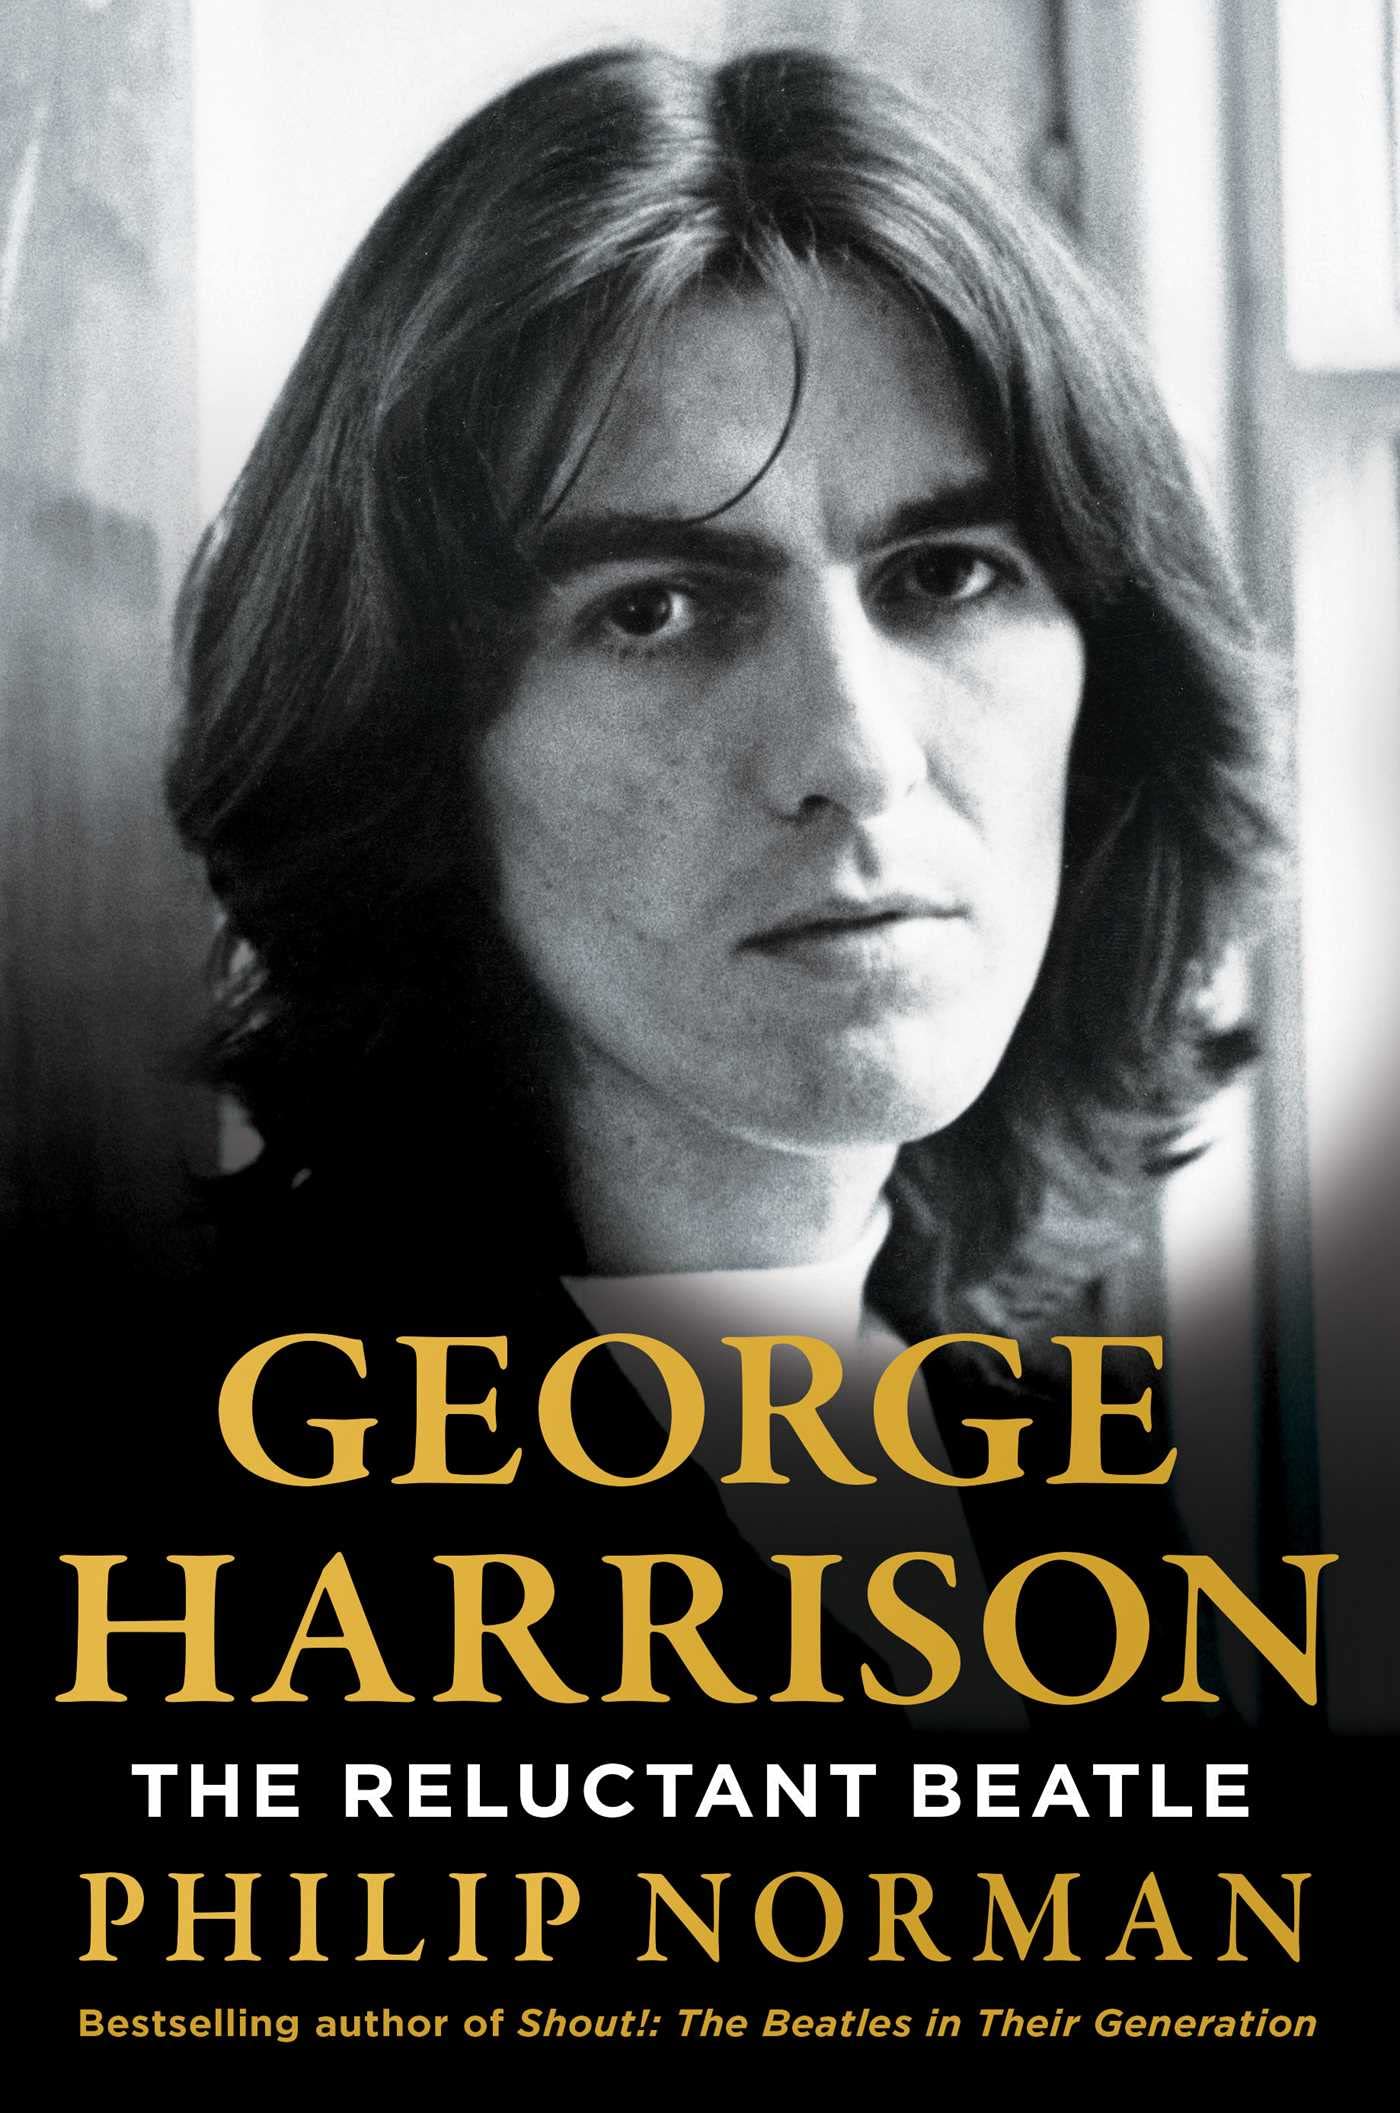 El libro se titula “George Harrison: The Reluctant Beatle” (“George Harrison: El Beatle Reacio”)